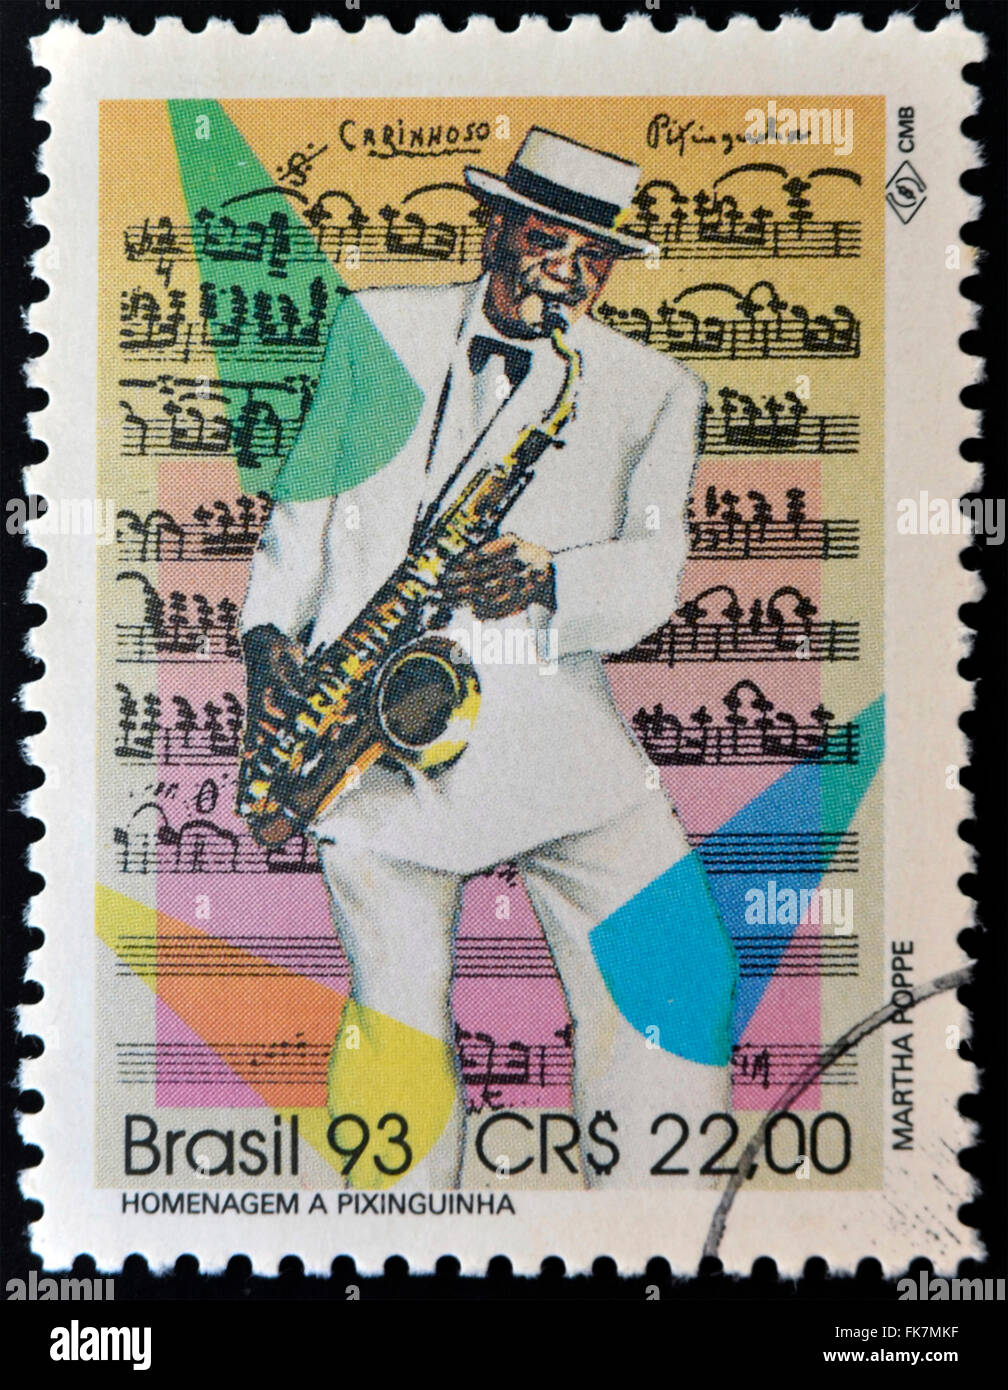 Brésil - circa 1993 : timbre imprimé au Brésil montre Pixinguinha, vers 1993 Banque D'Images